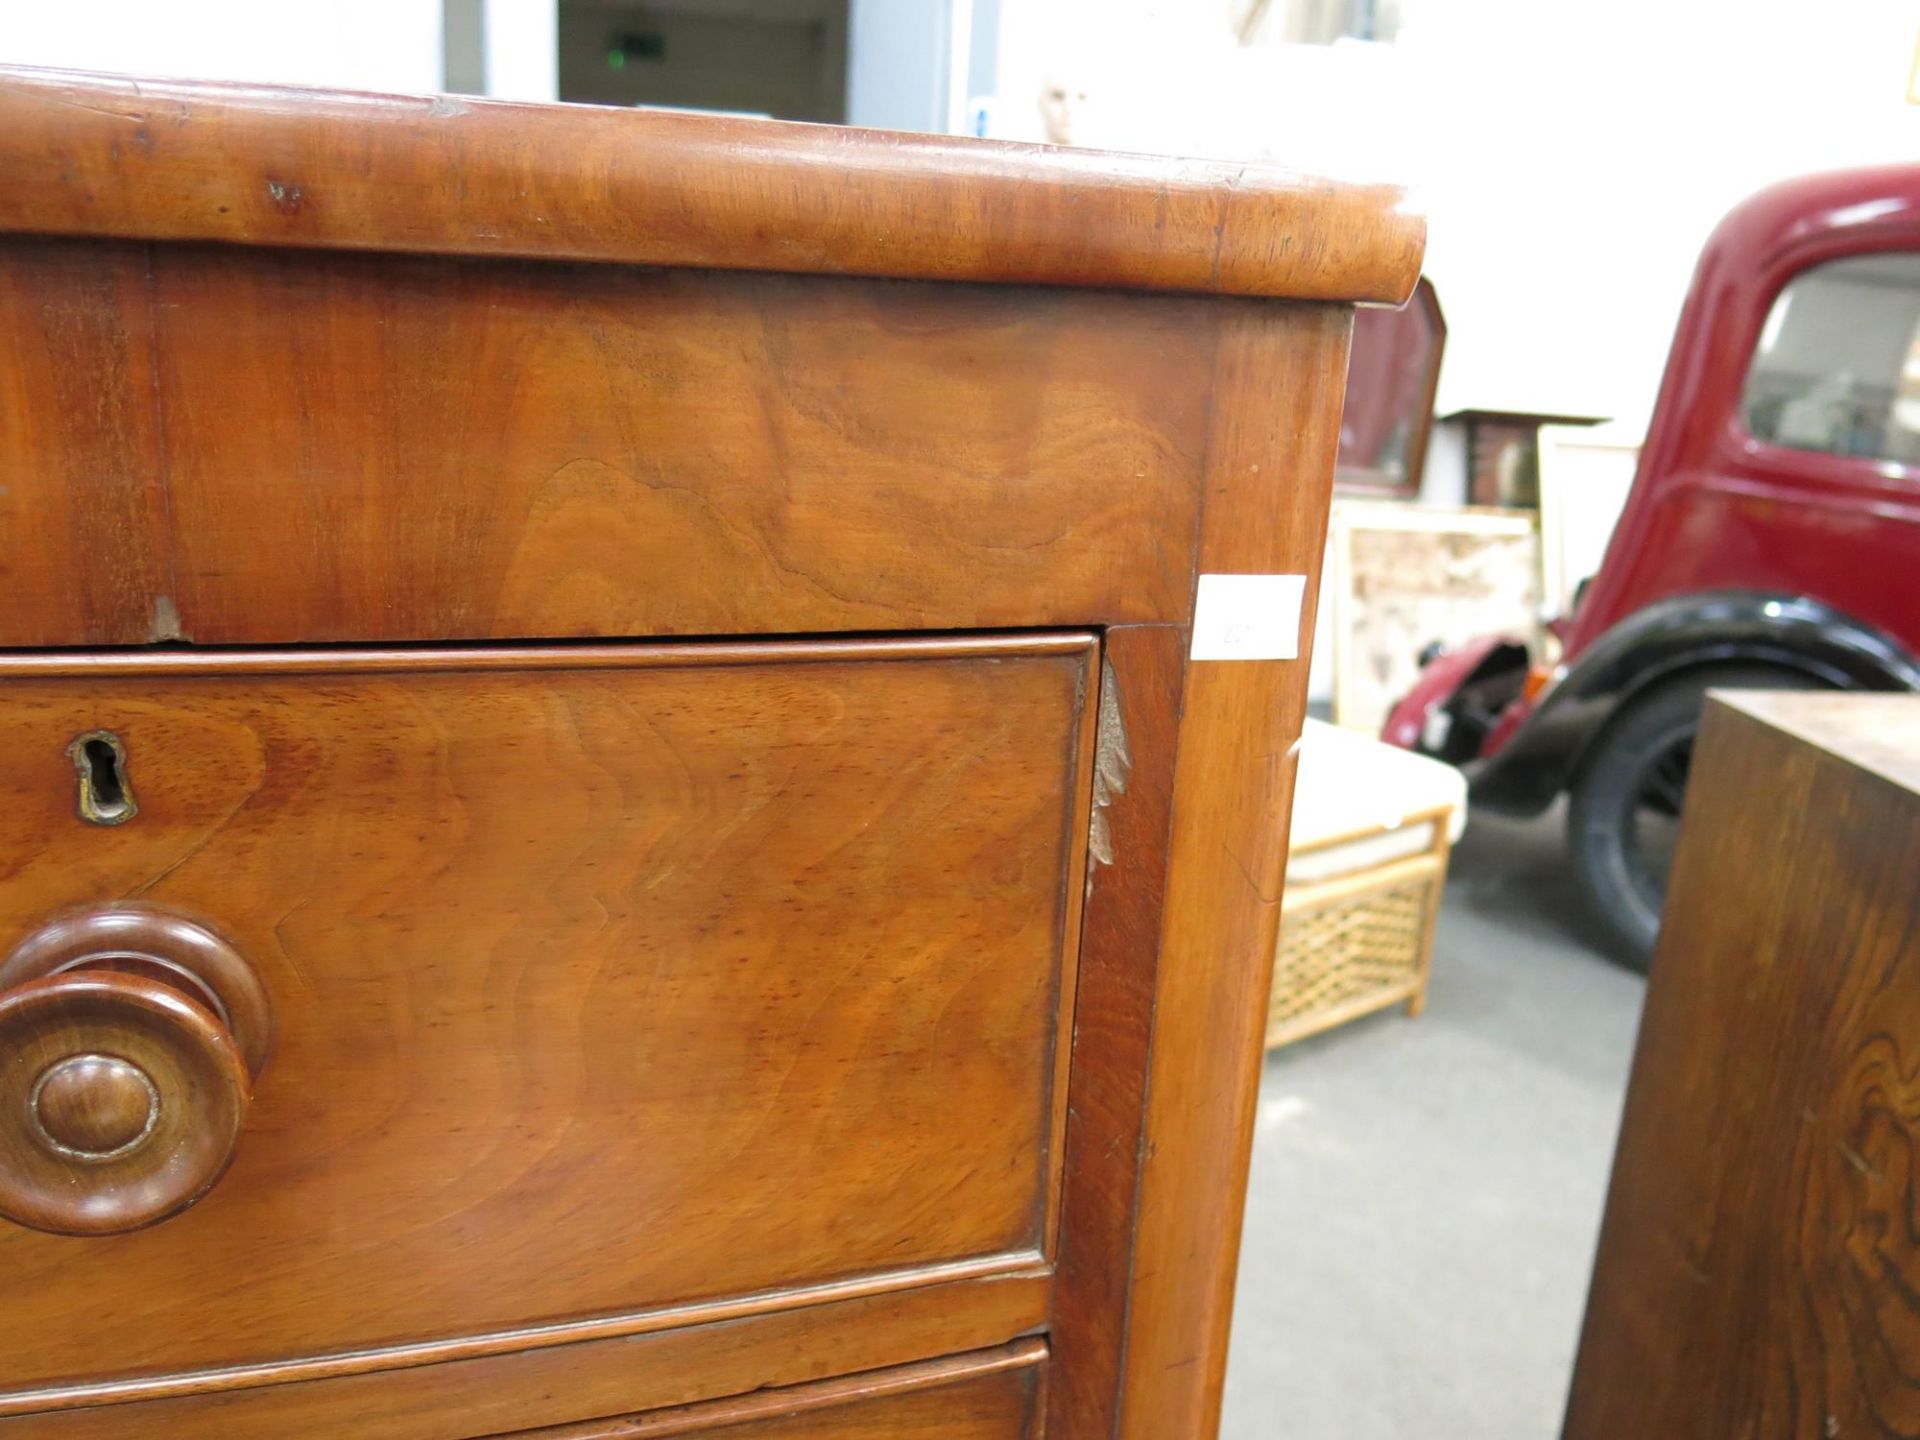 A Victorian Mahogany five drawer chest (H 125cm, W 104cm, D 56cm) (est £100 - £120) - Image 3 of 3